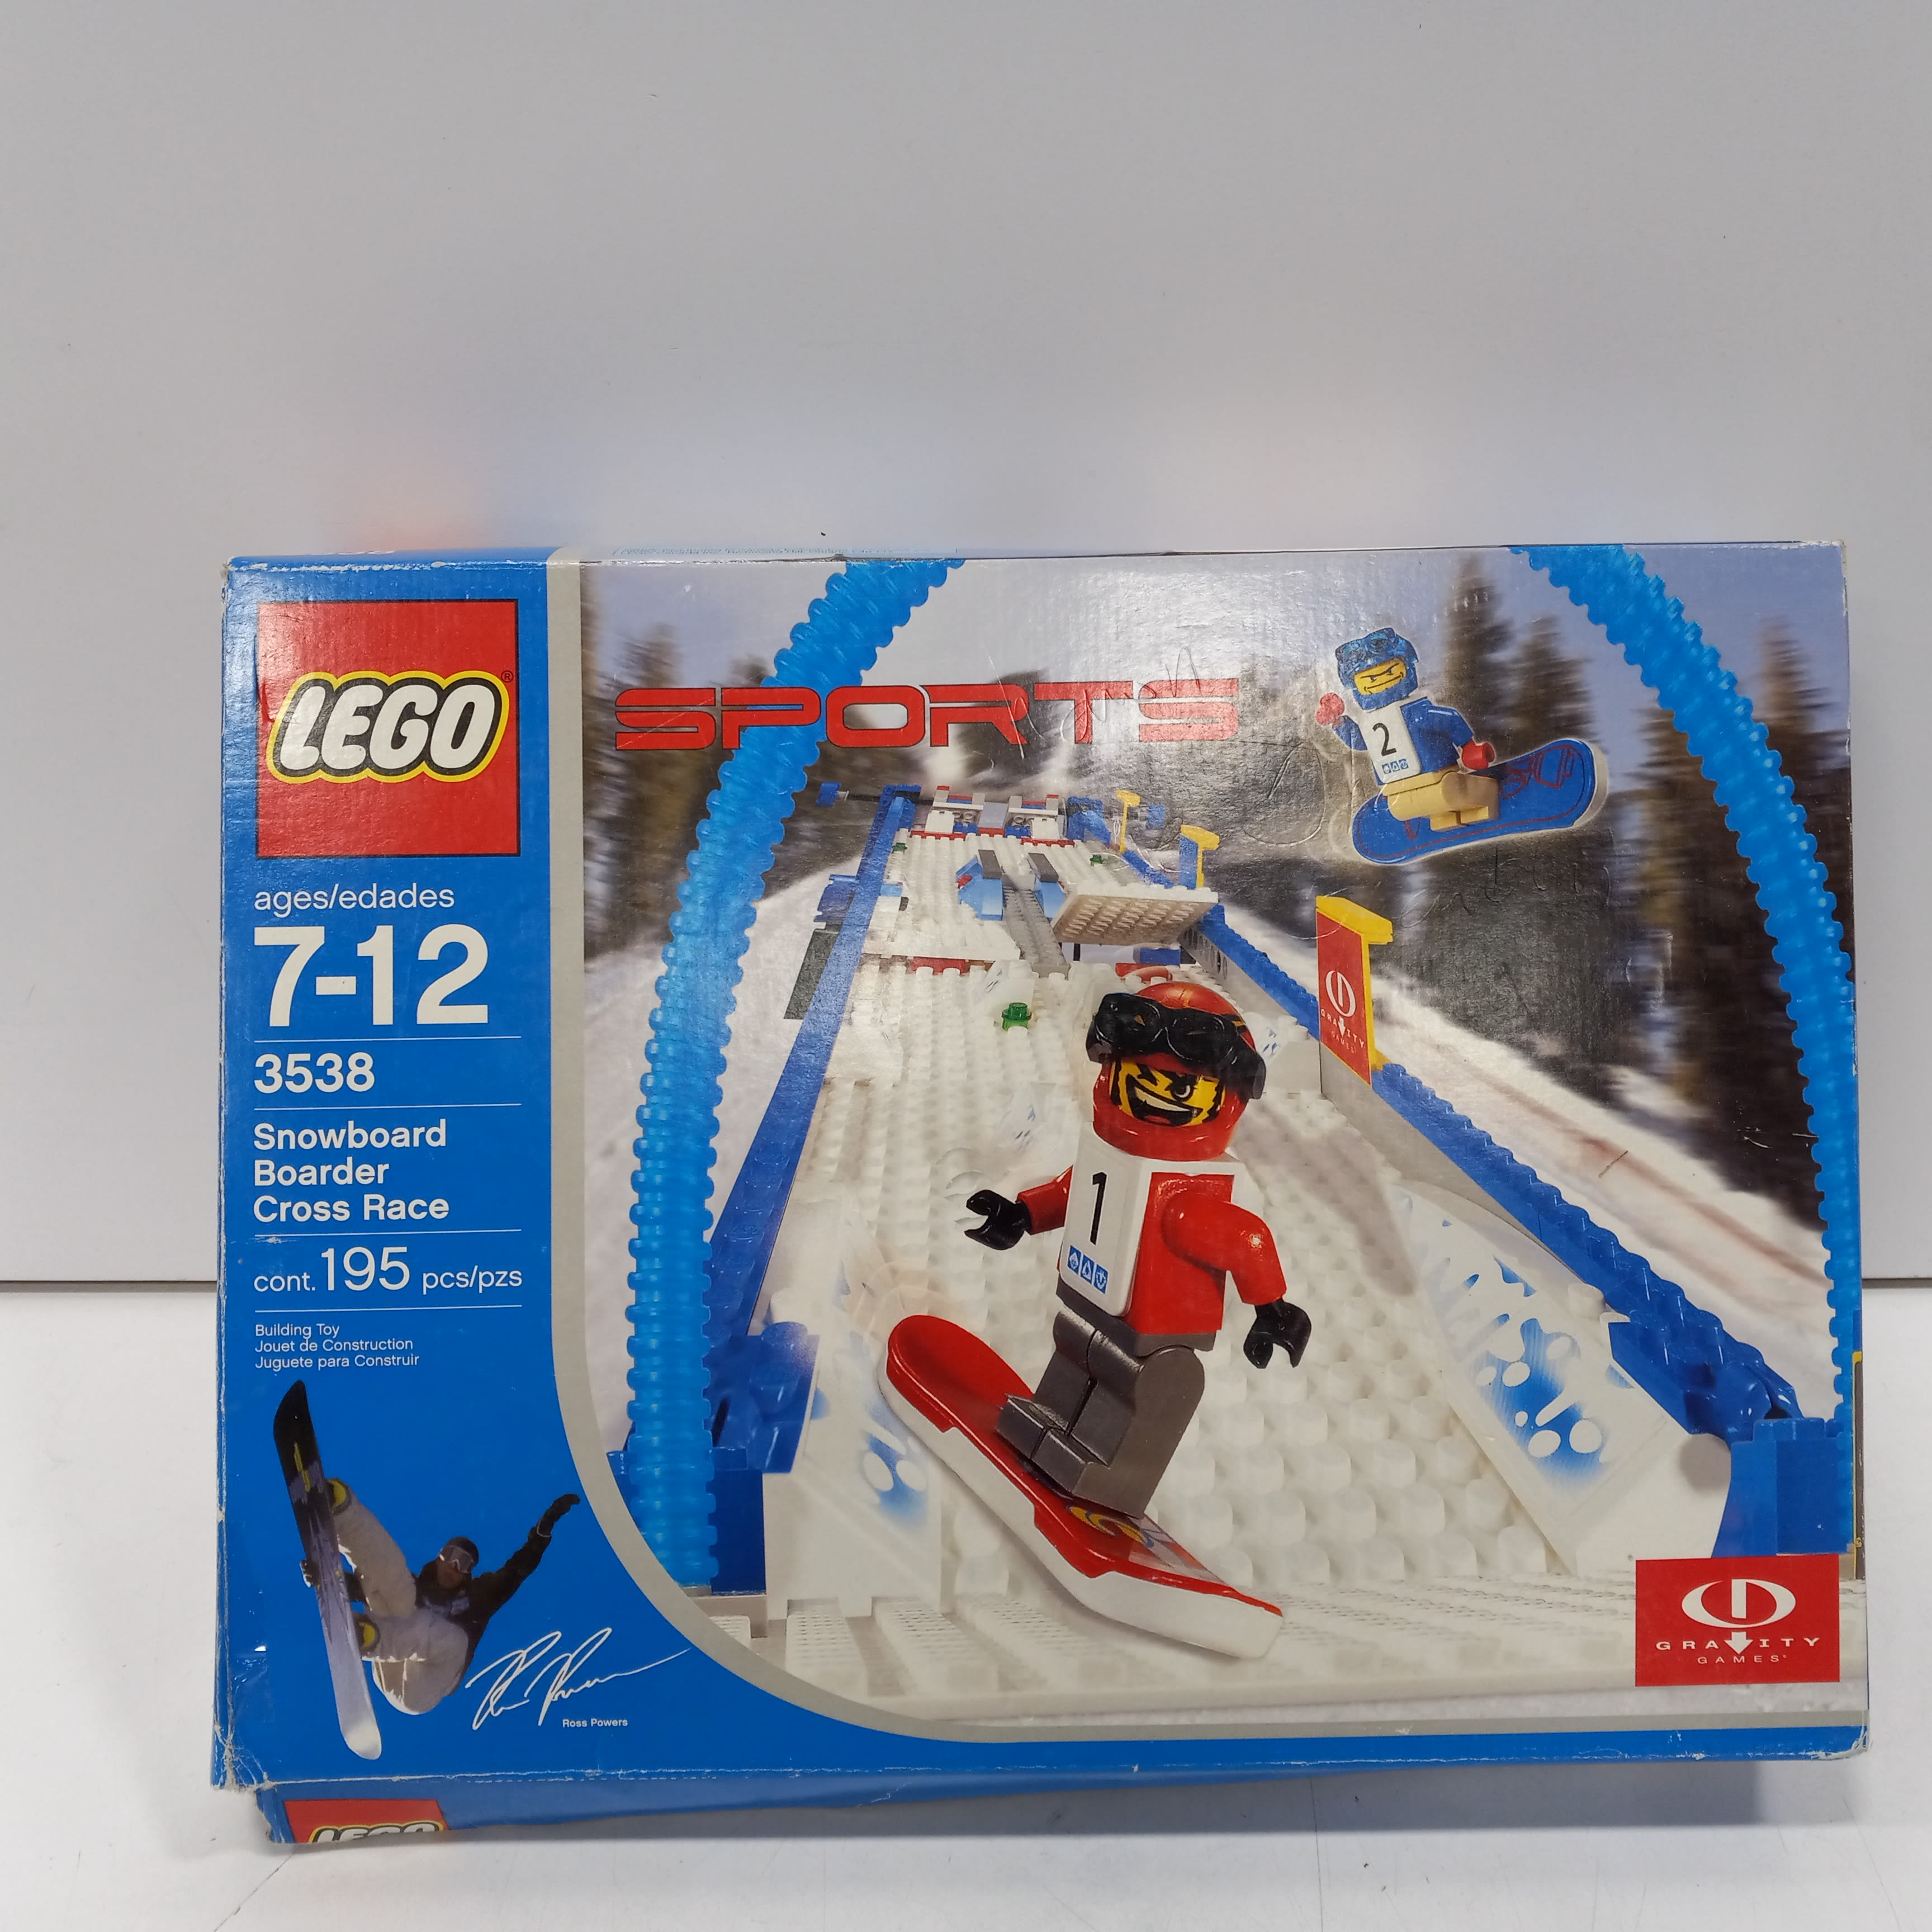 Buy the Lego Sports Snowboard Boarder Cross Race Set 3538